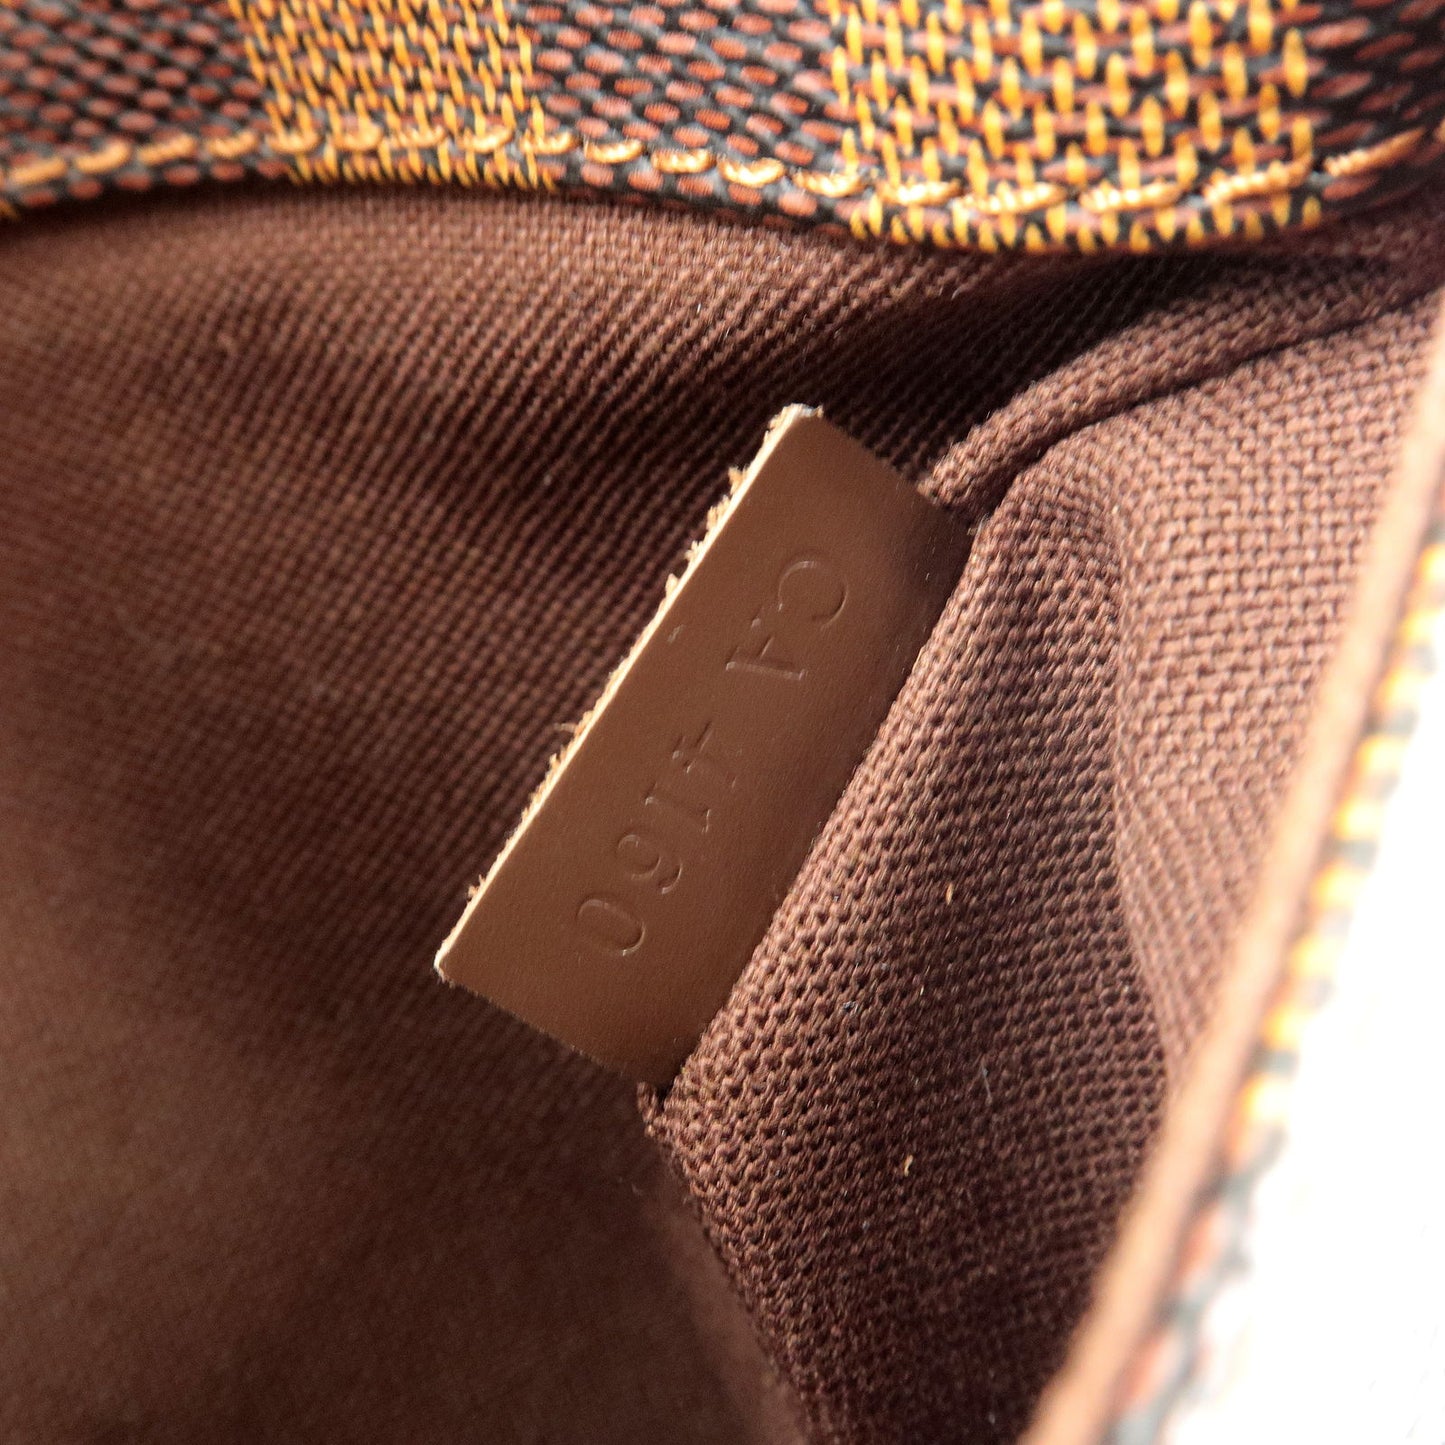 Vuitton - Damier - N41101 – dct - Bag - Bag - Bum - Waist